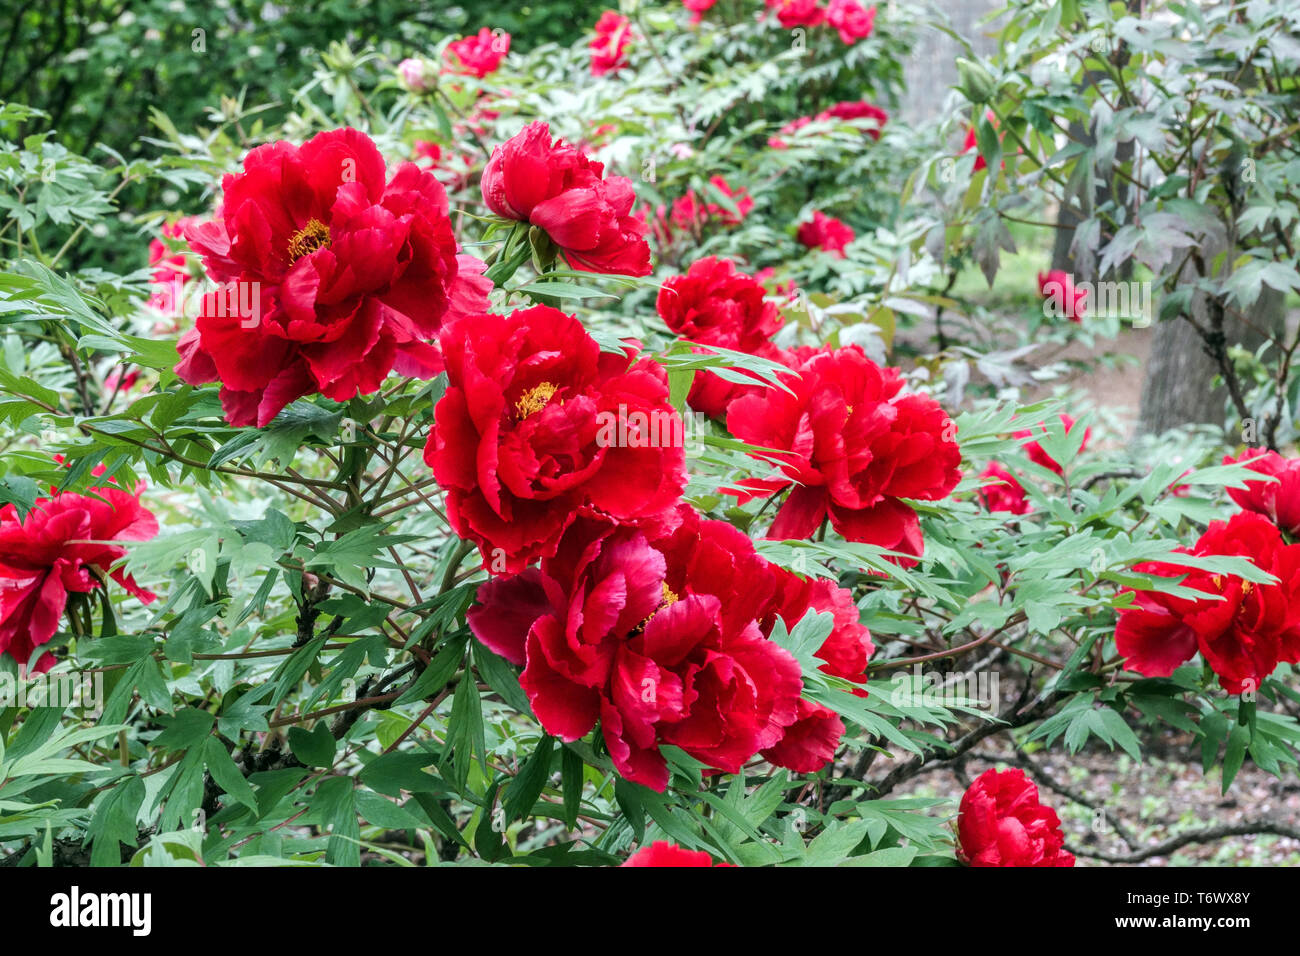 Rote Baum Pfingstrosen unter Bäumen, Paeonia suffruticosa 'Hoki' Rote Baum  Pfingstrose, Strauchpflanze im Garten, schöne Blüten winterhart im  schattigen Garten Stockfotografie - Alamy